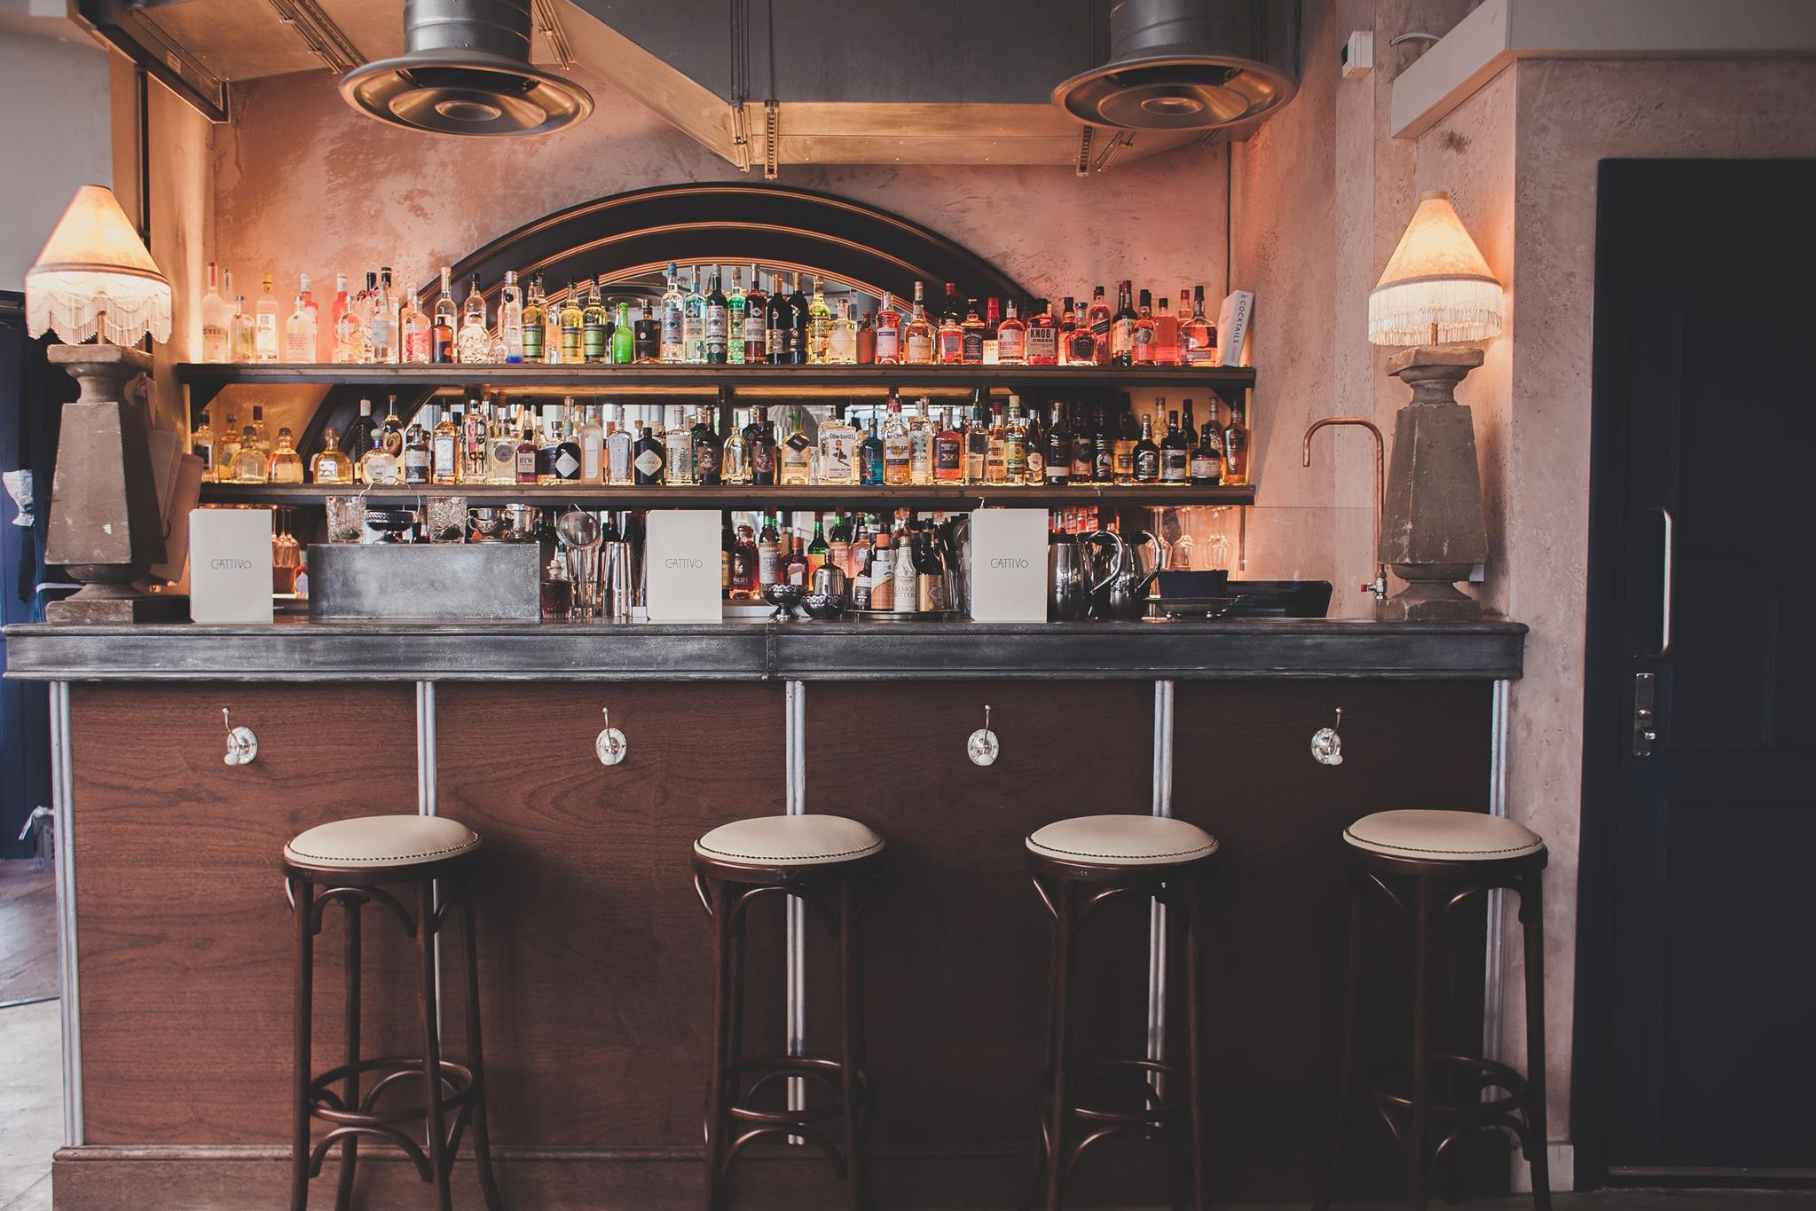 bar-stools-at-bar-of-cattivo-bar